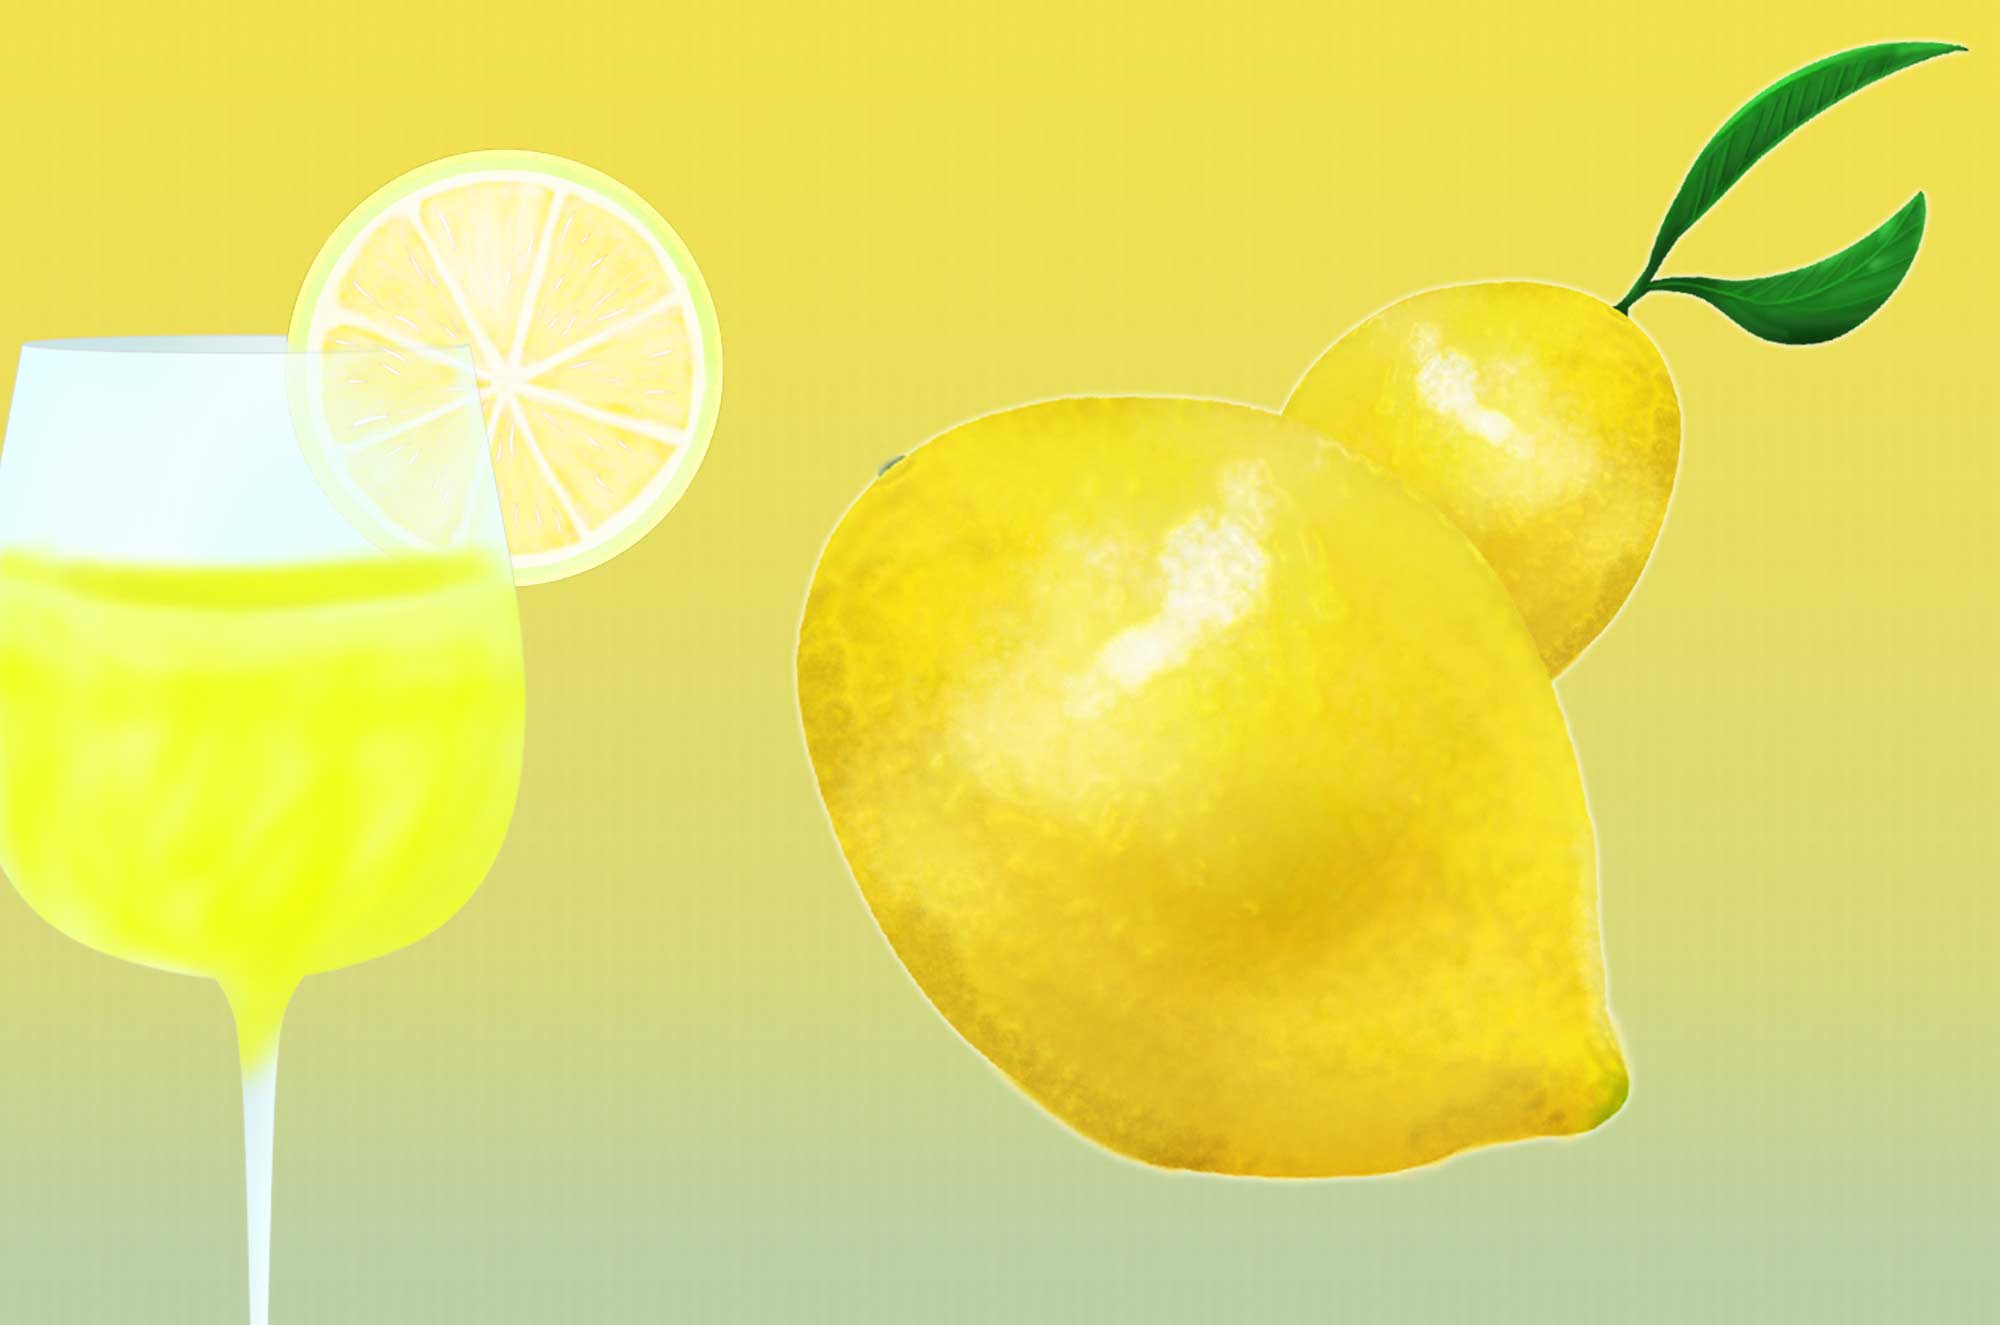 レモンイラスト - 商用利用可能で無料で使える果物素材